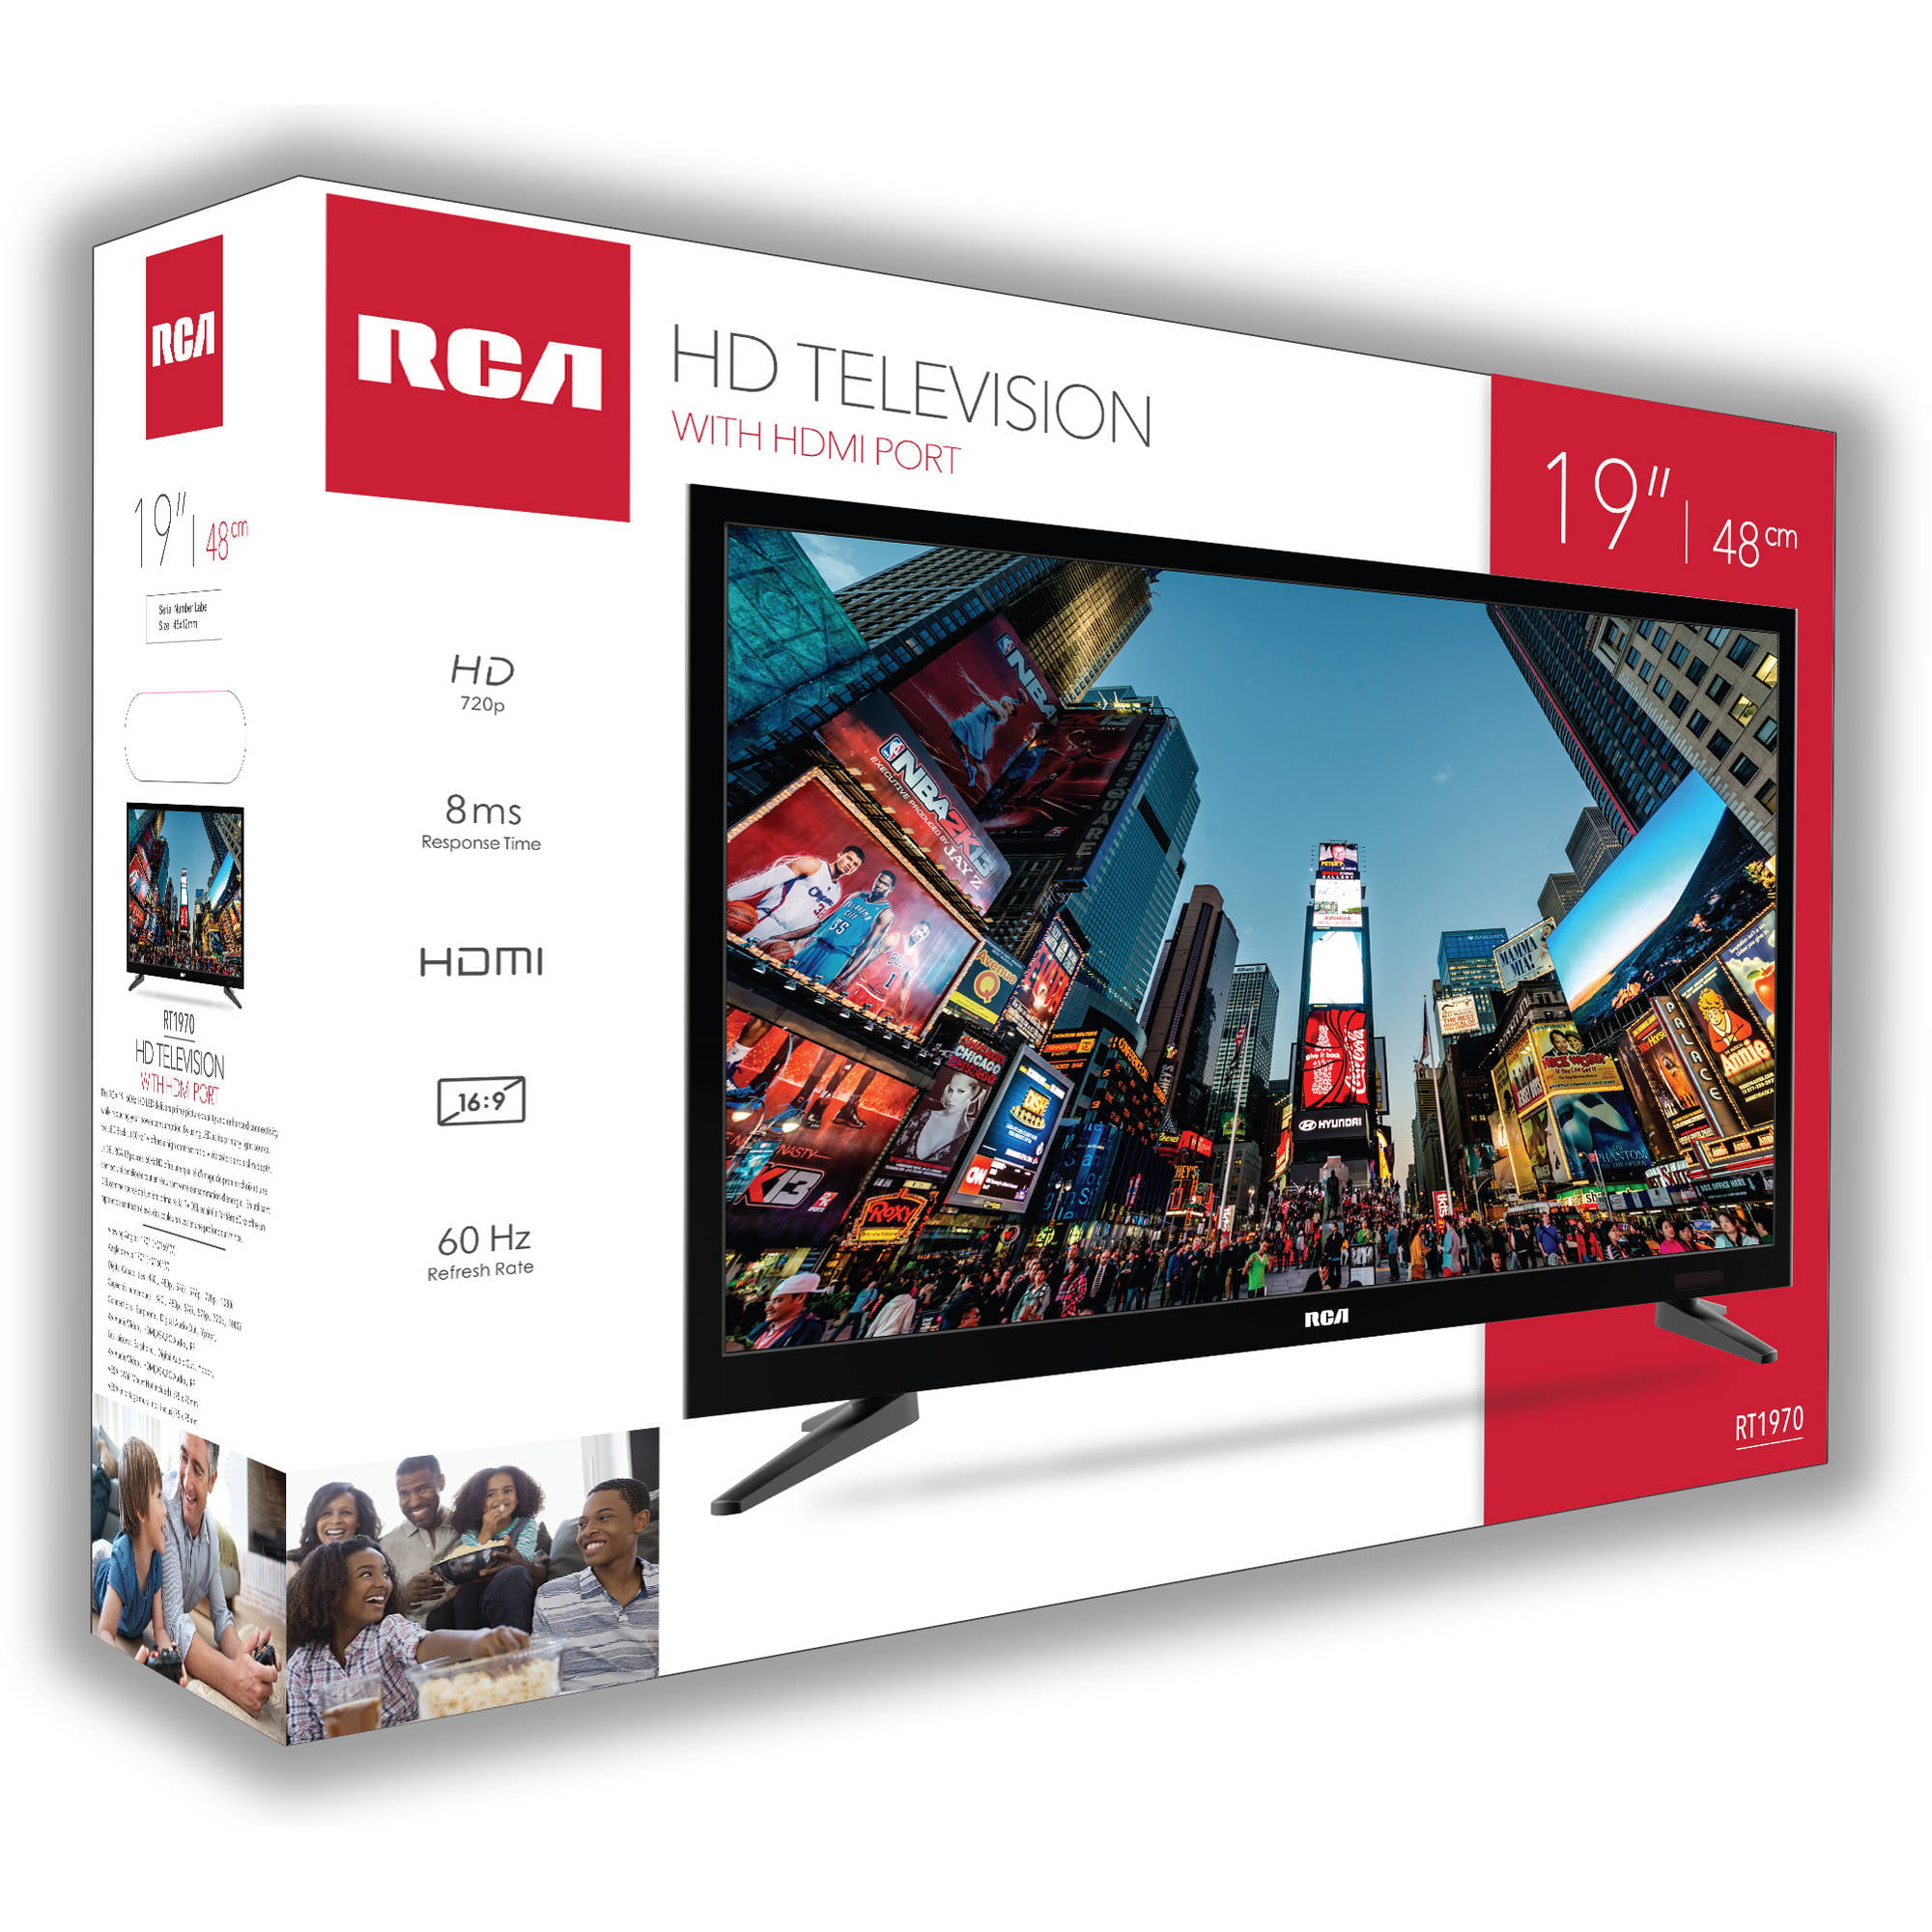 tesalemenos.com - TV LED RCA 19 DTG185R 720P U$ 165.00 - Pantalla RCA  modelo DETC-190M4 - Tamaño de la Pantalla 19 Pulgadas - Resolución 1366 x  768 - 60 HZ - Entrada